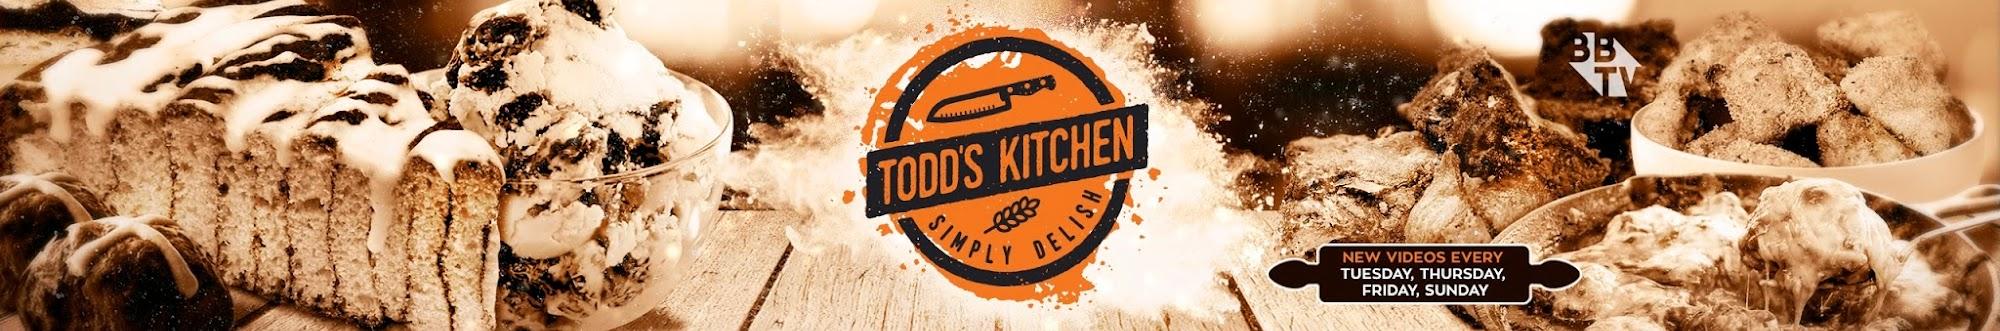 Todd's Kitchen